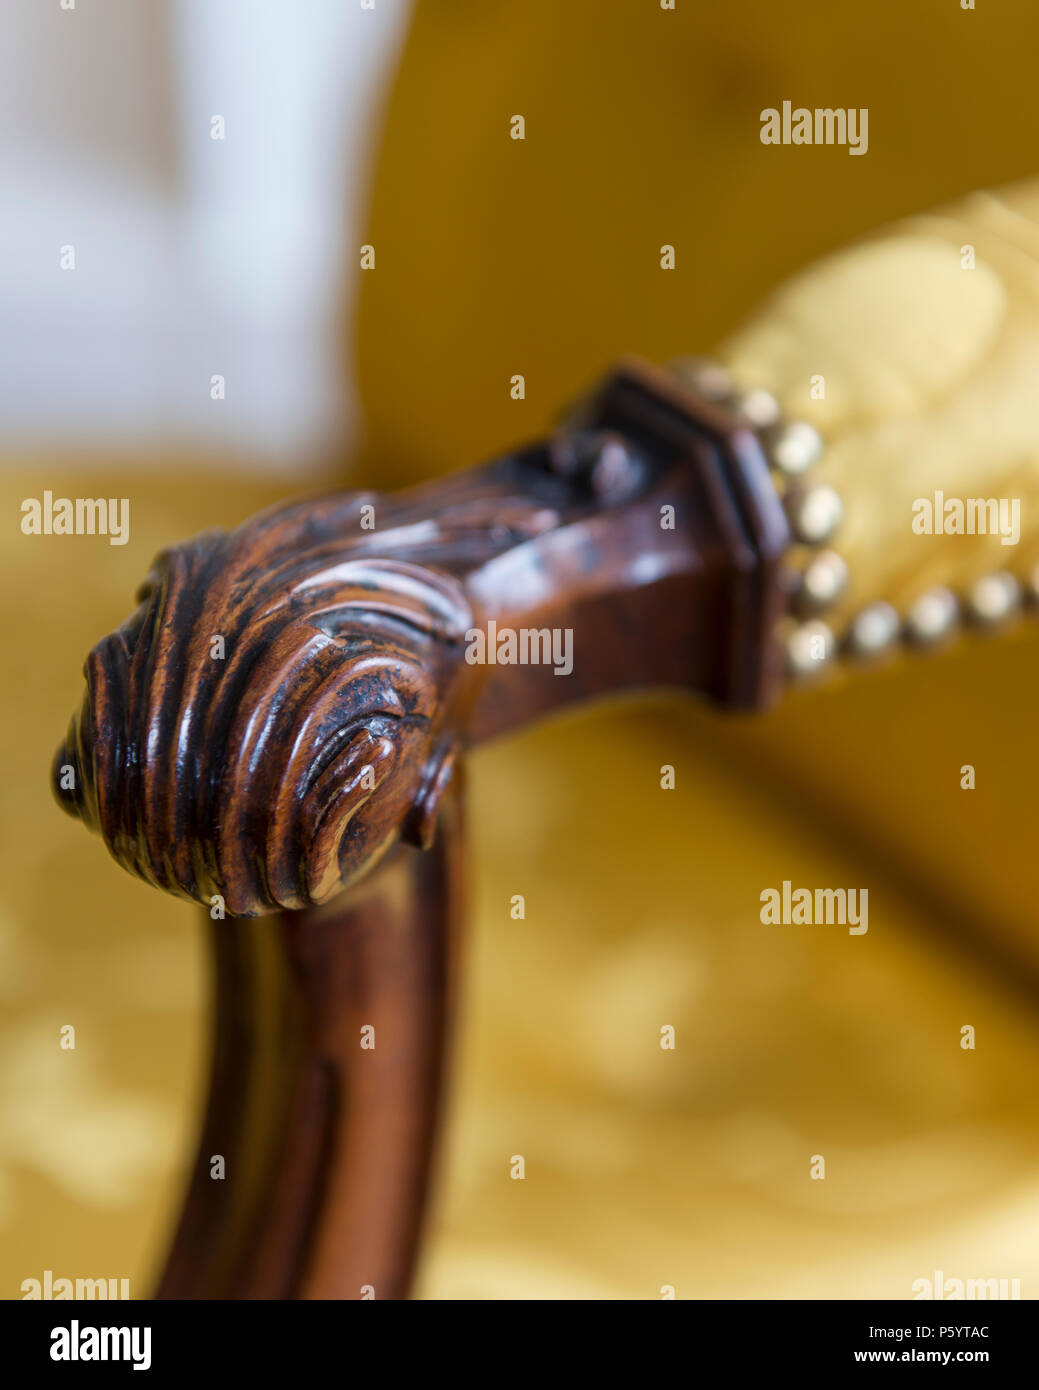 Dettaglio della poltrona in legno con tappezzeria di colore giallo Foto Stock